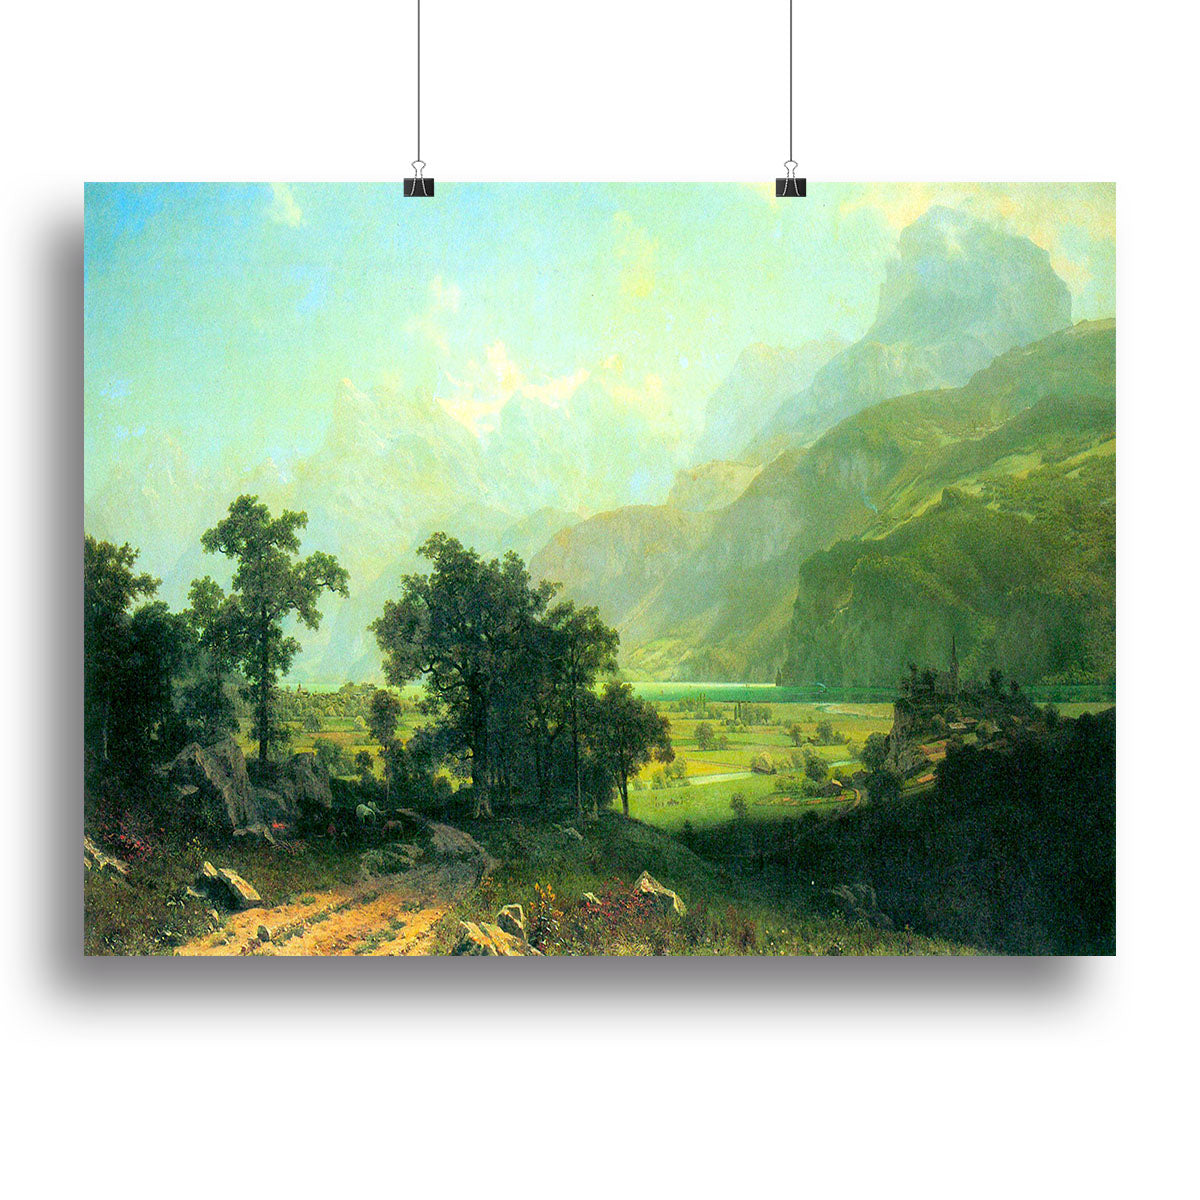 Lucerne Switzerland by Bierstadt Canvas Print or Poster - Canvas Art Rocks - 2